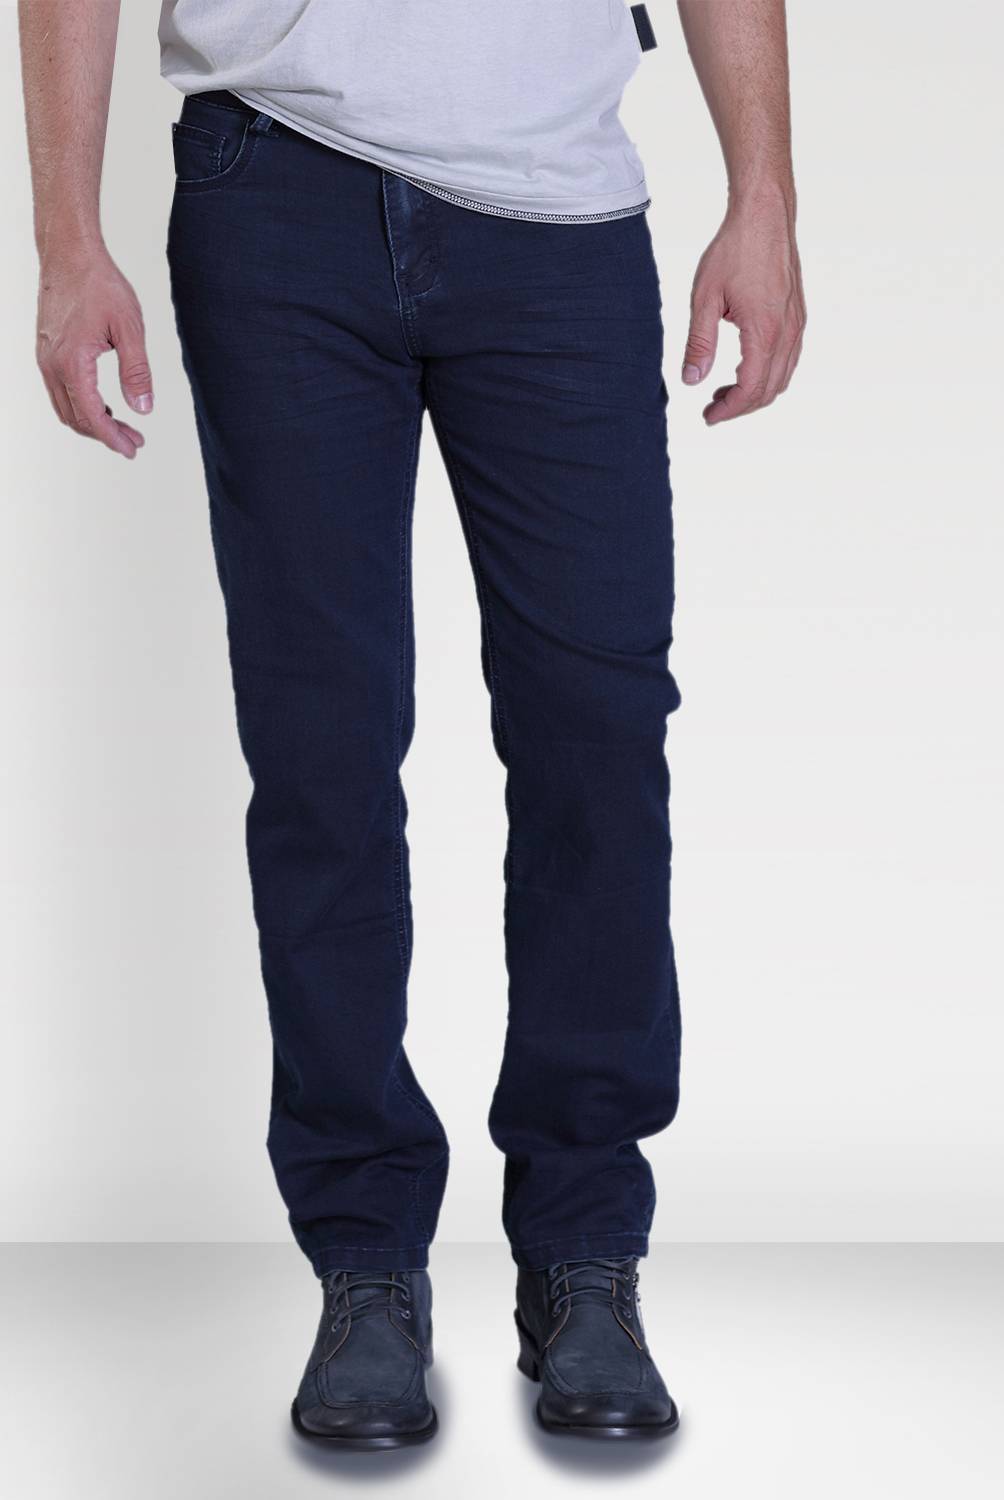 Ellus - Jeans Hombre Básico Slim 